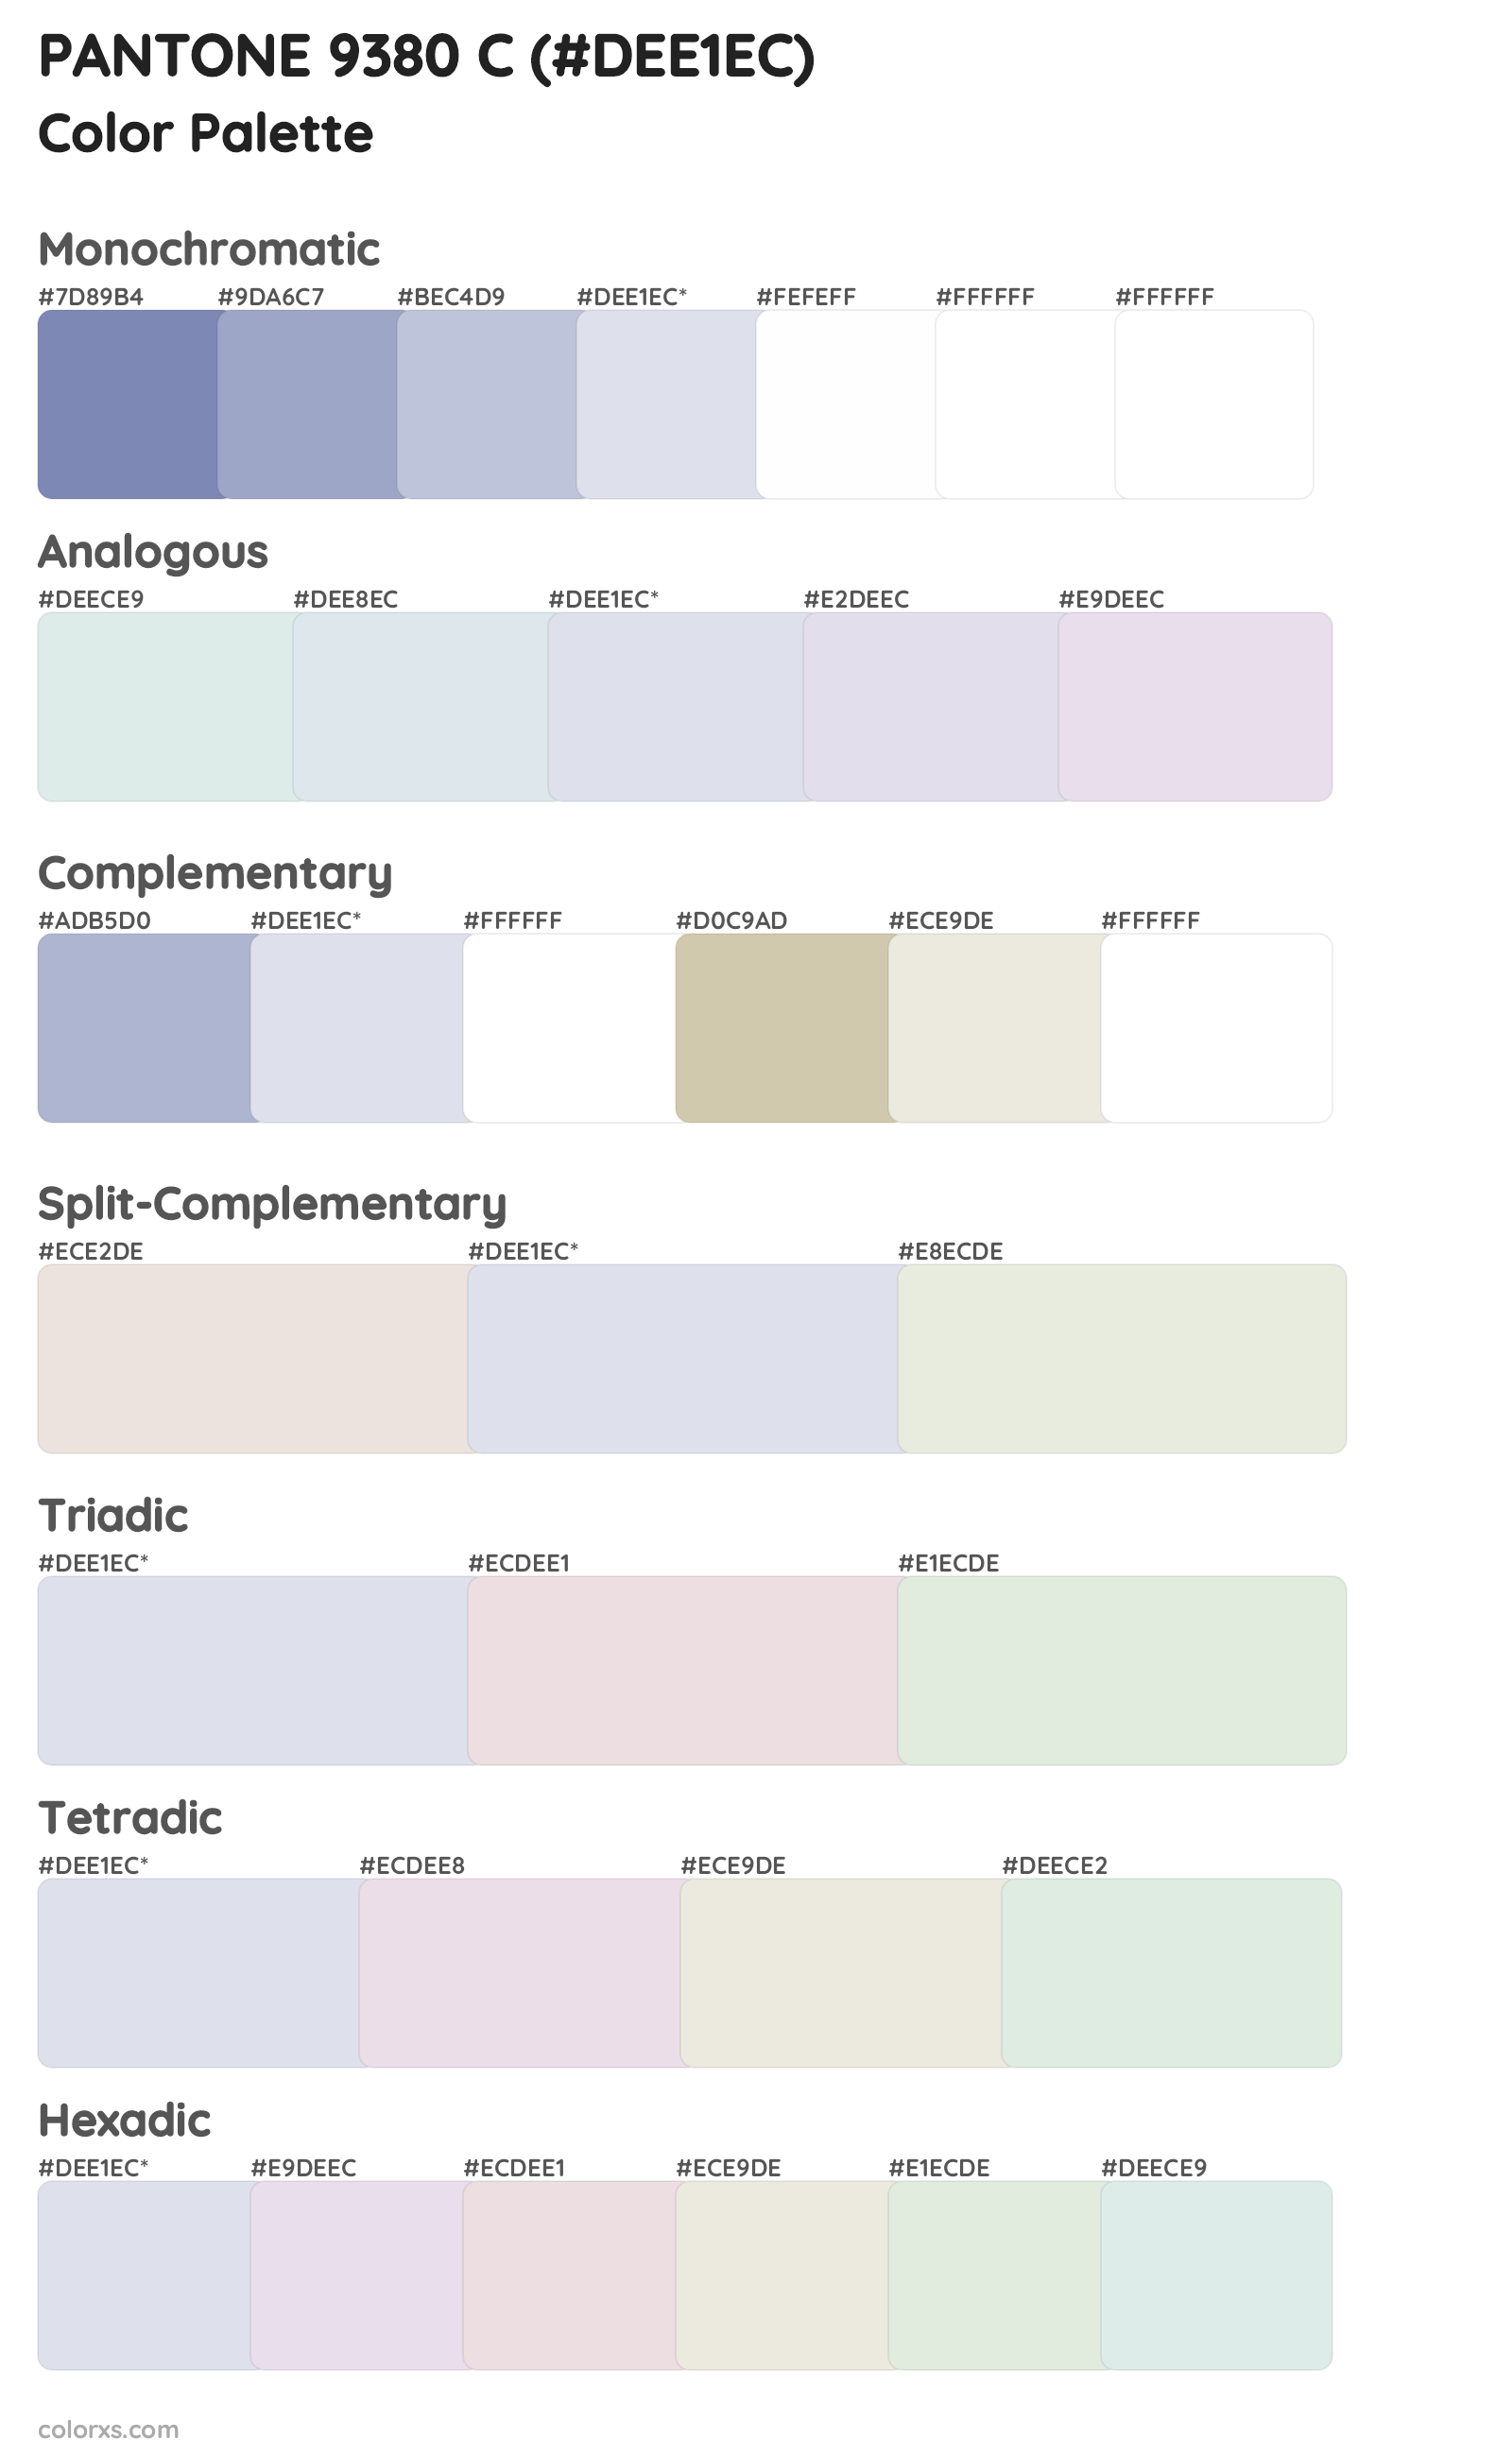 PANTONE 9380 C Color Scheme Palettes